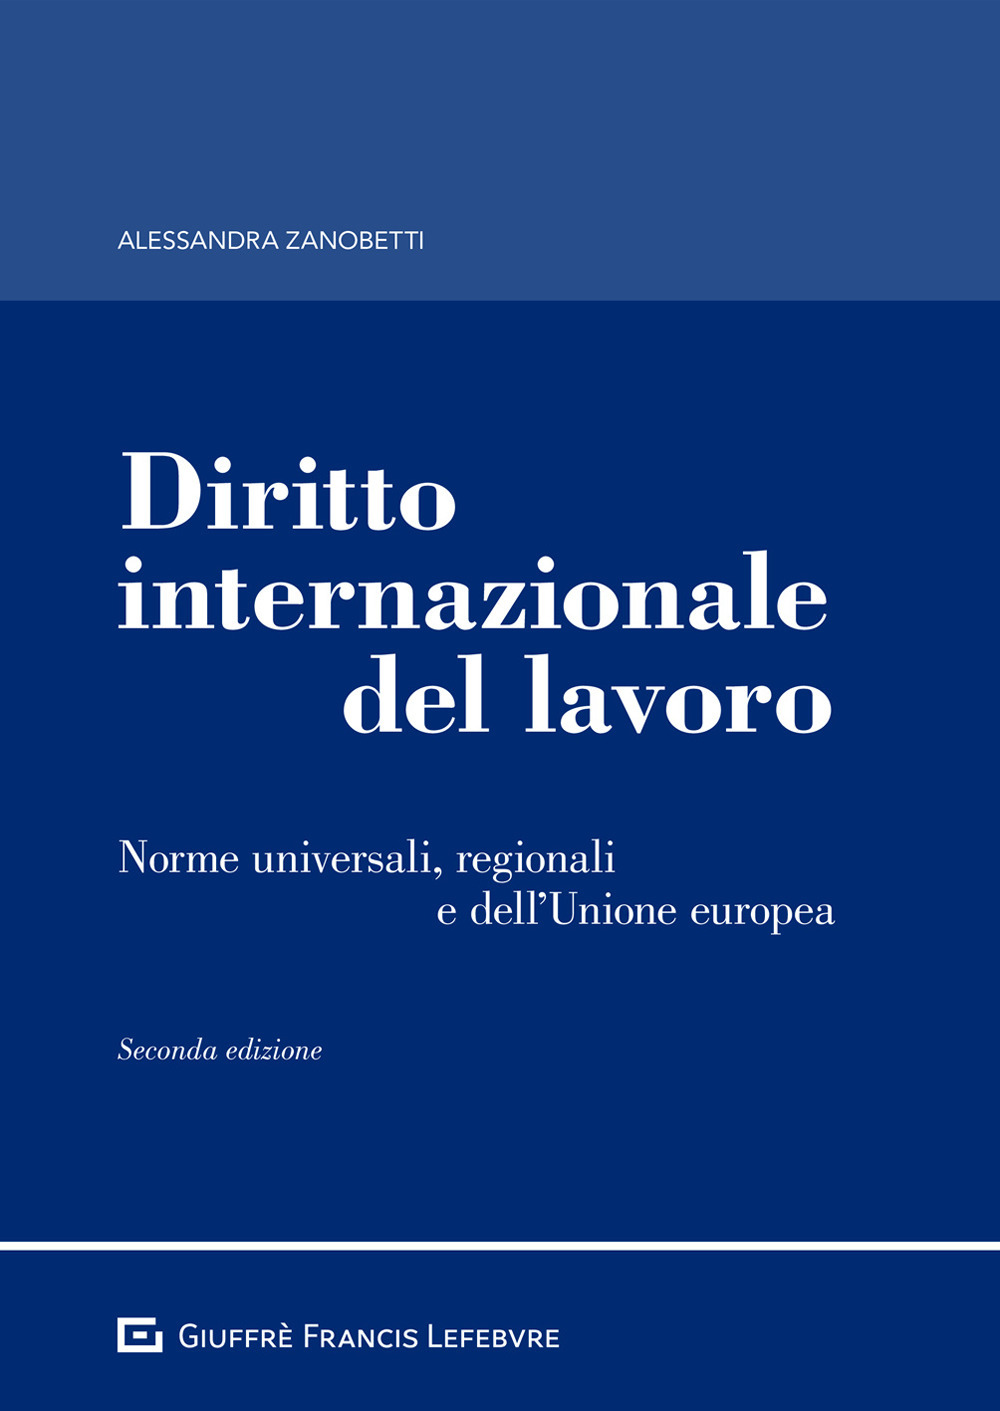 Image of Diritto internazionale del lavoro. Norme universali, regionali e dell'Unione europea